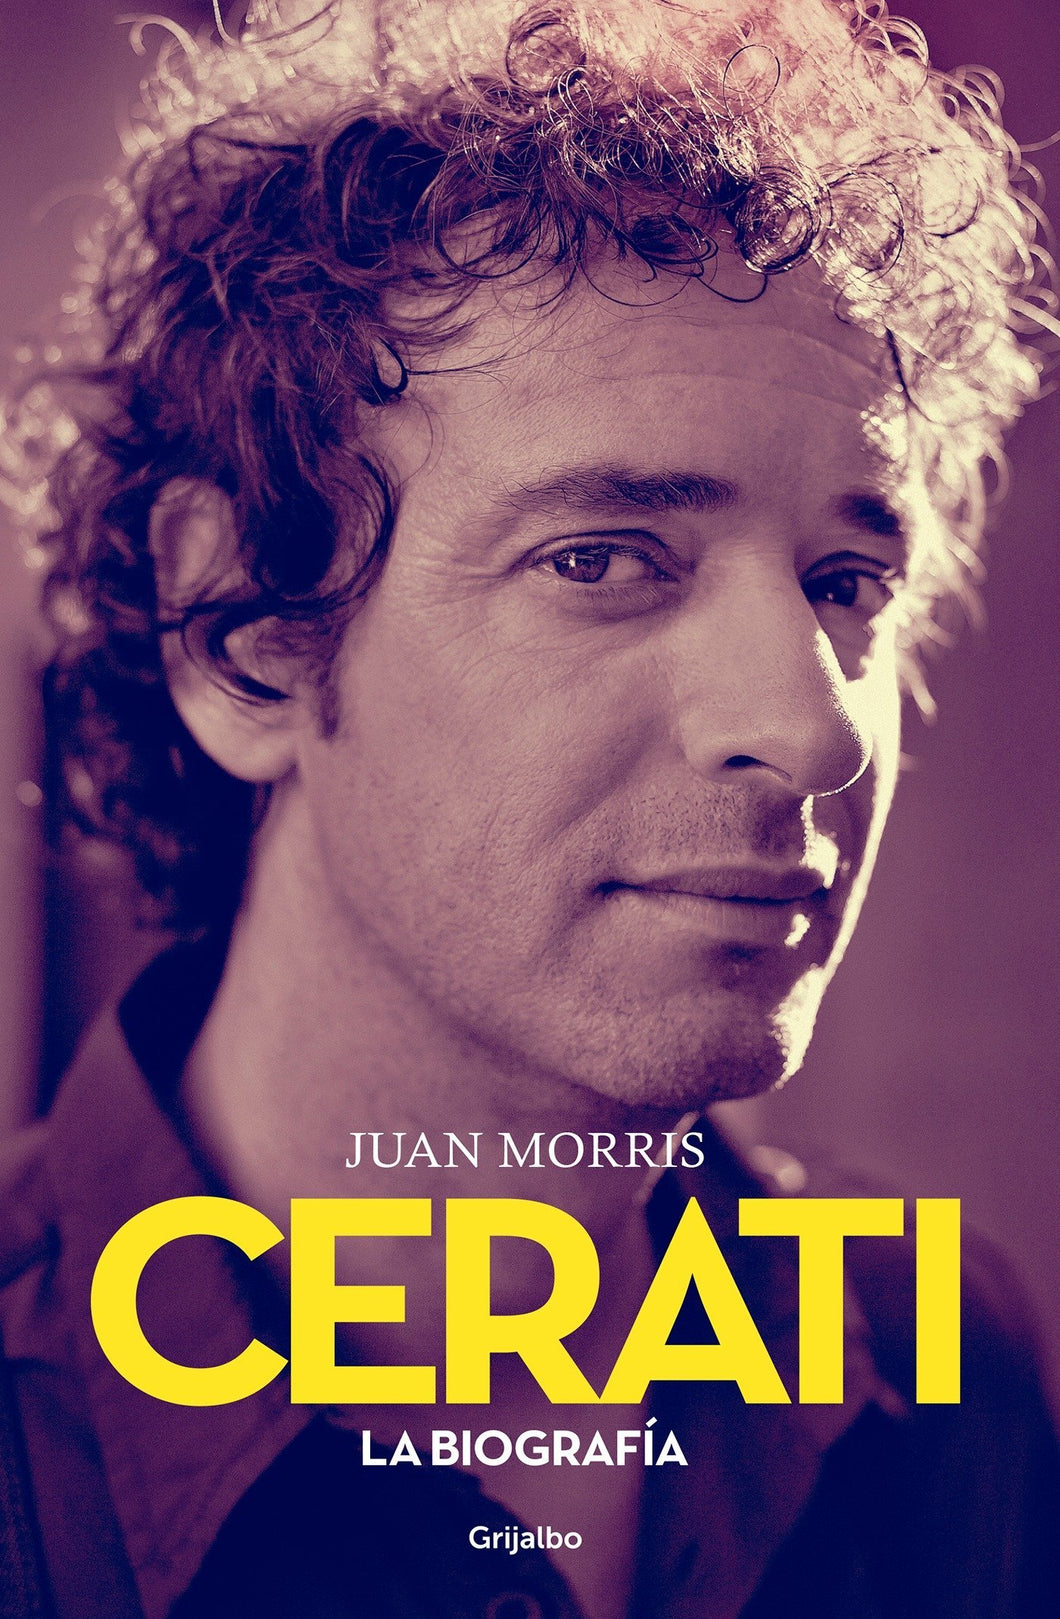 Juan Morris - Cerati: La Biografía